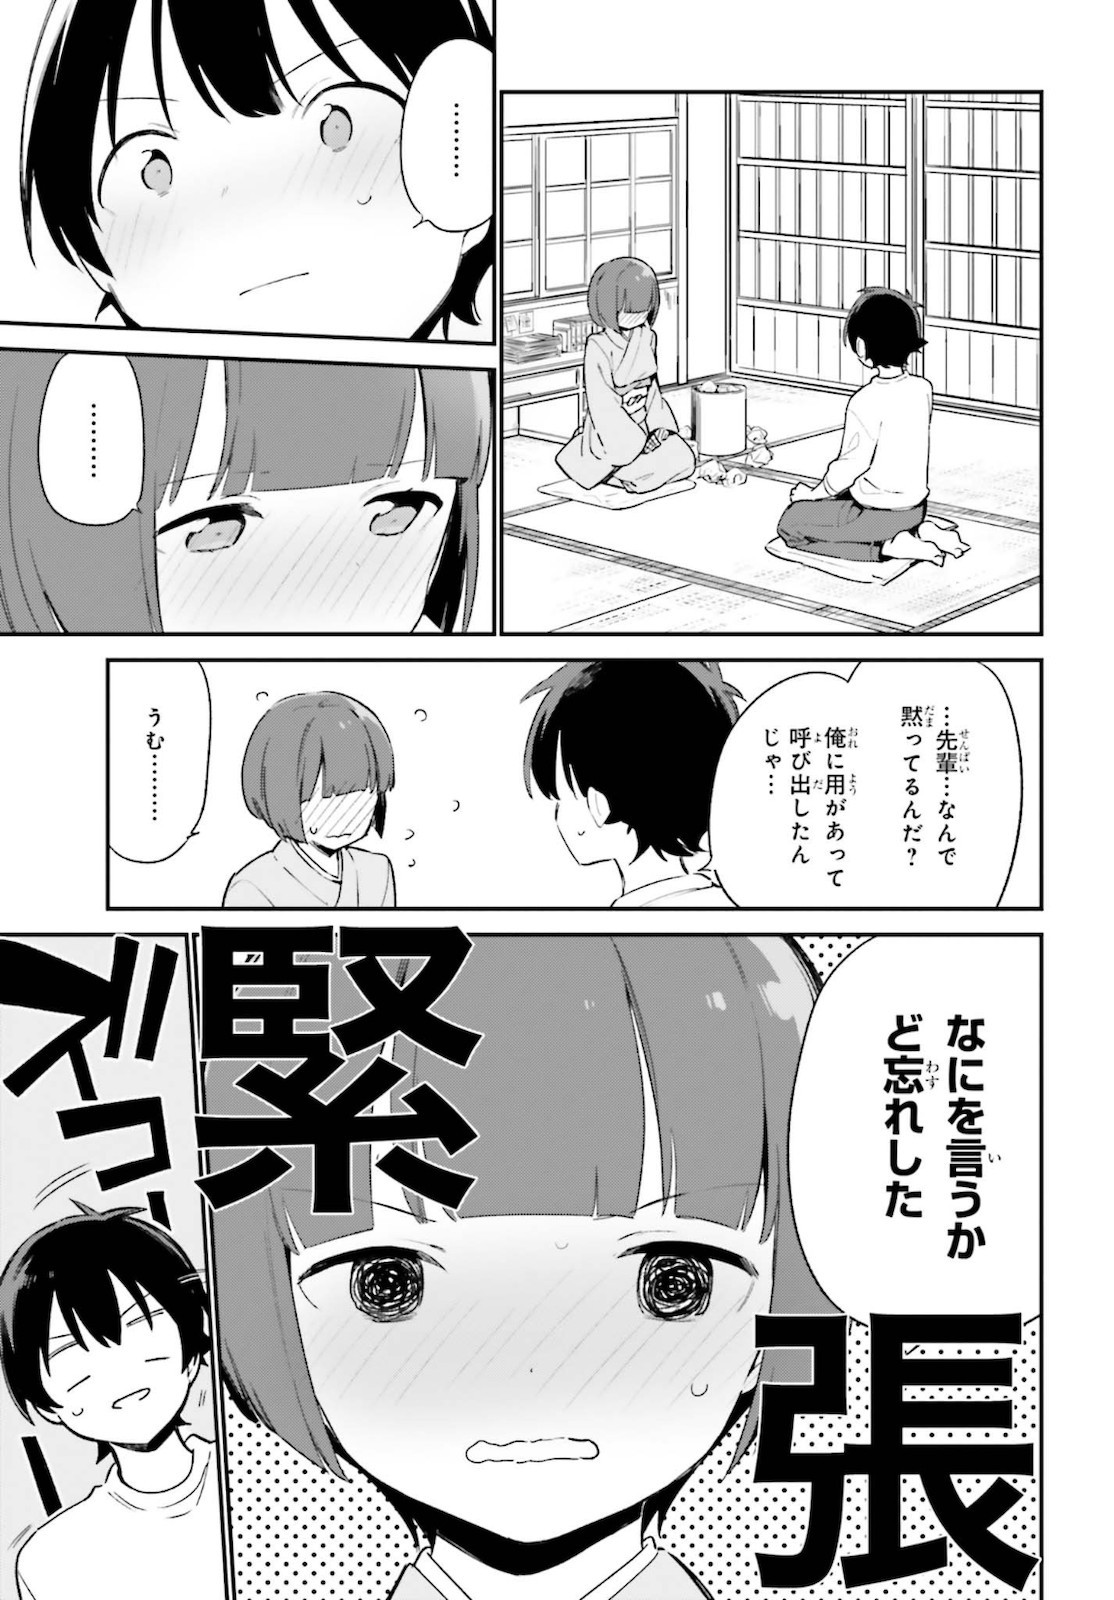 Ero Manga Sensei - Chapter 71 - Page 3